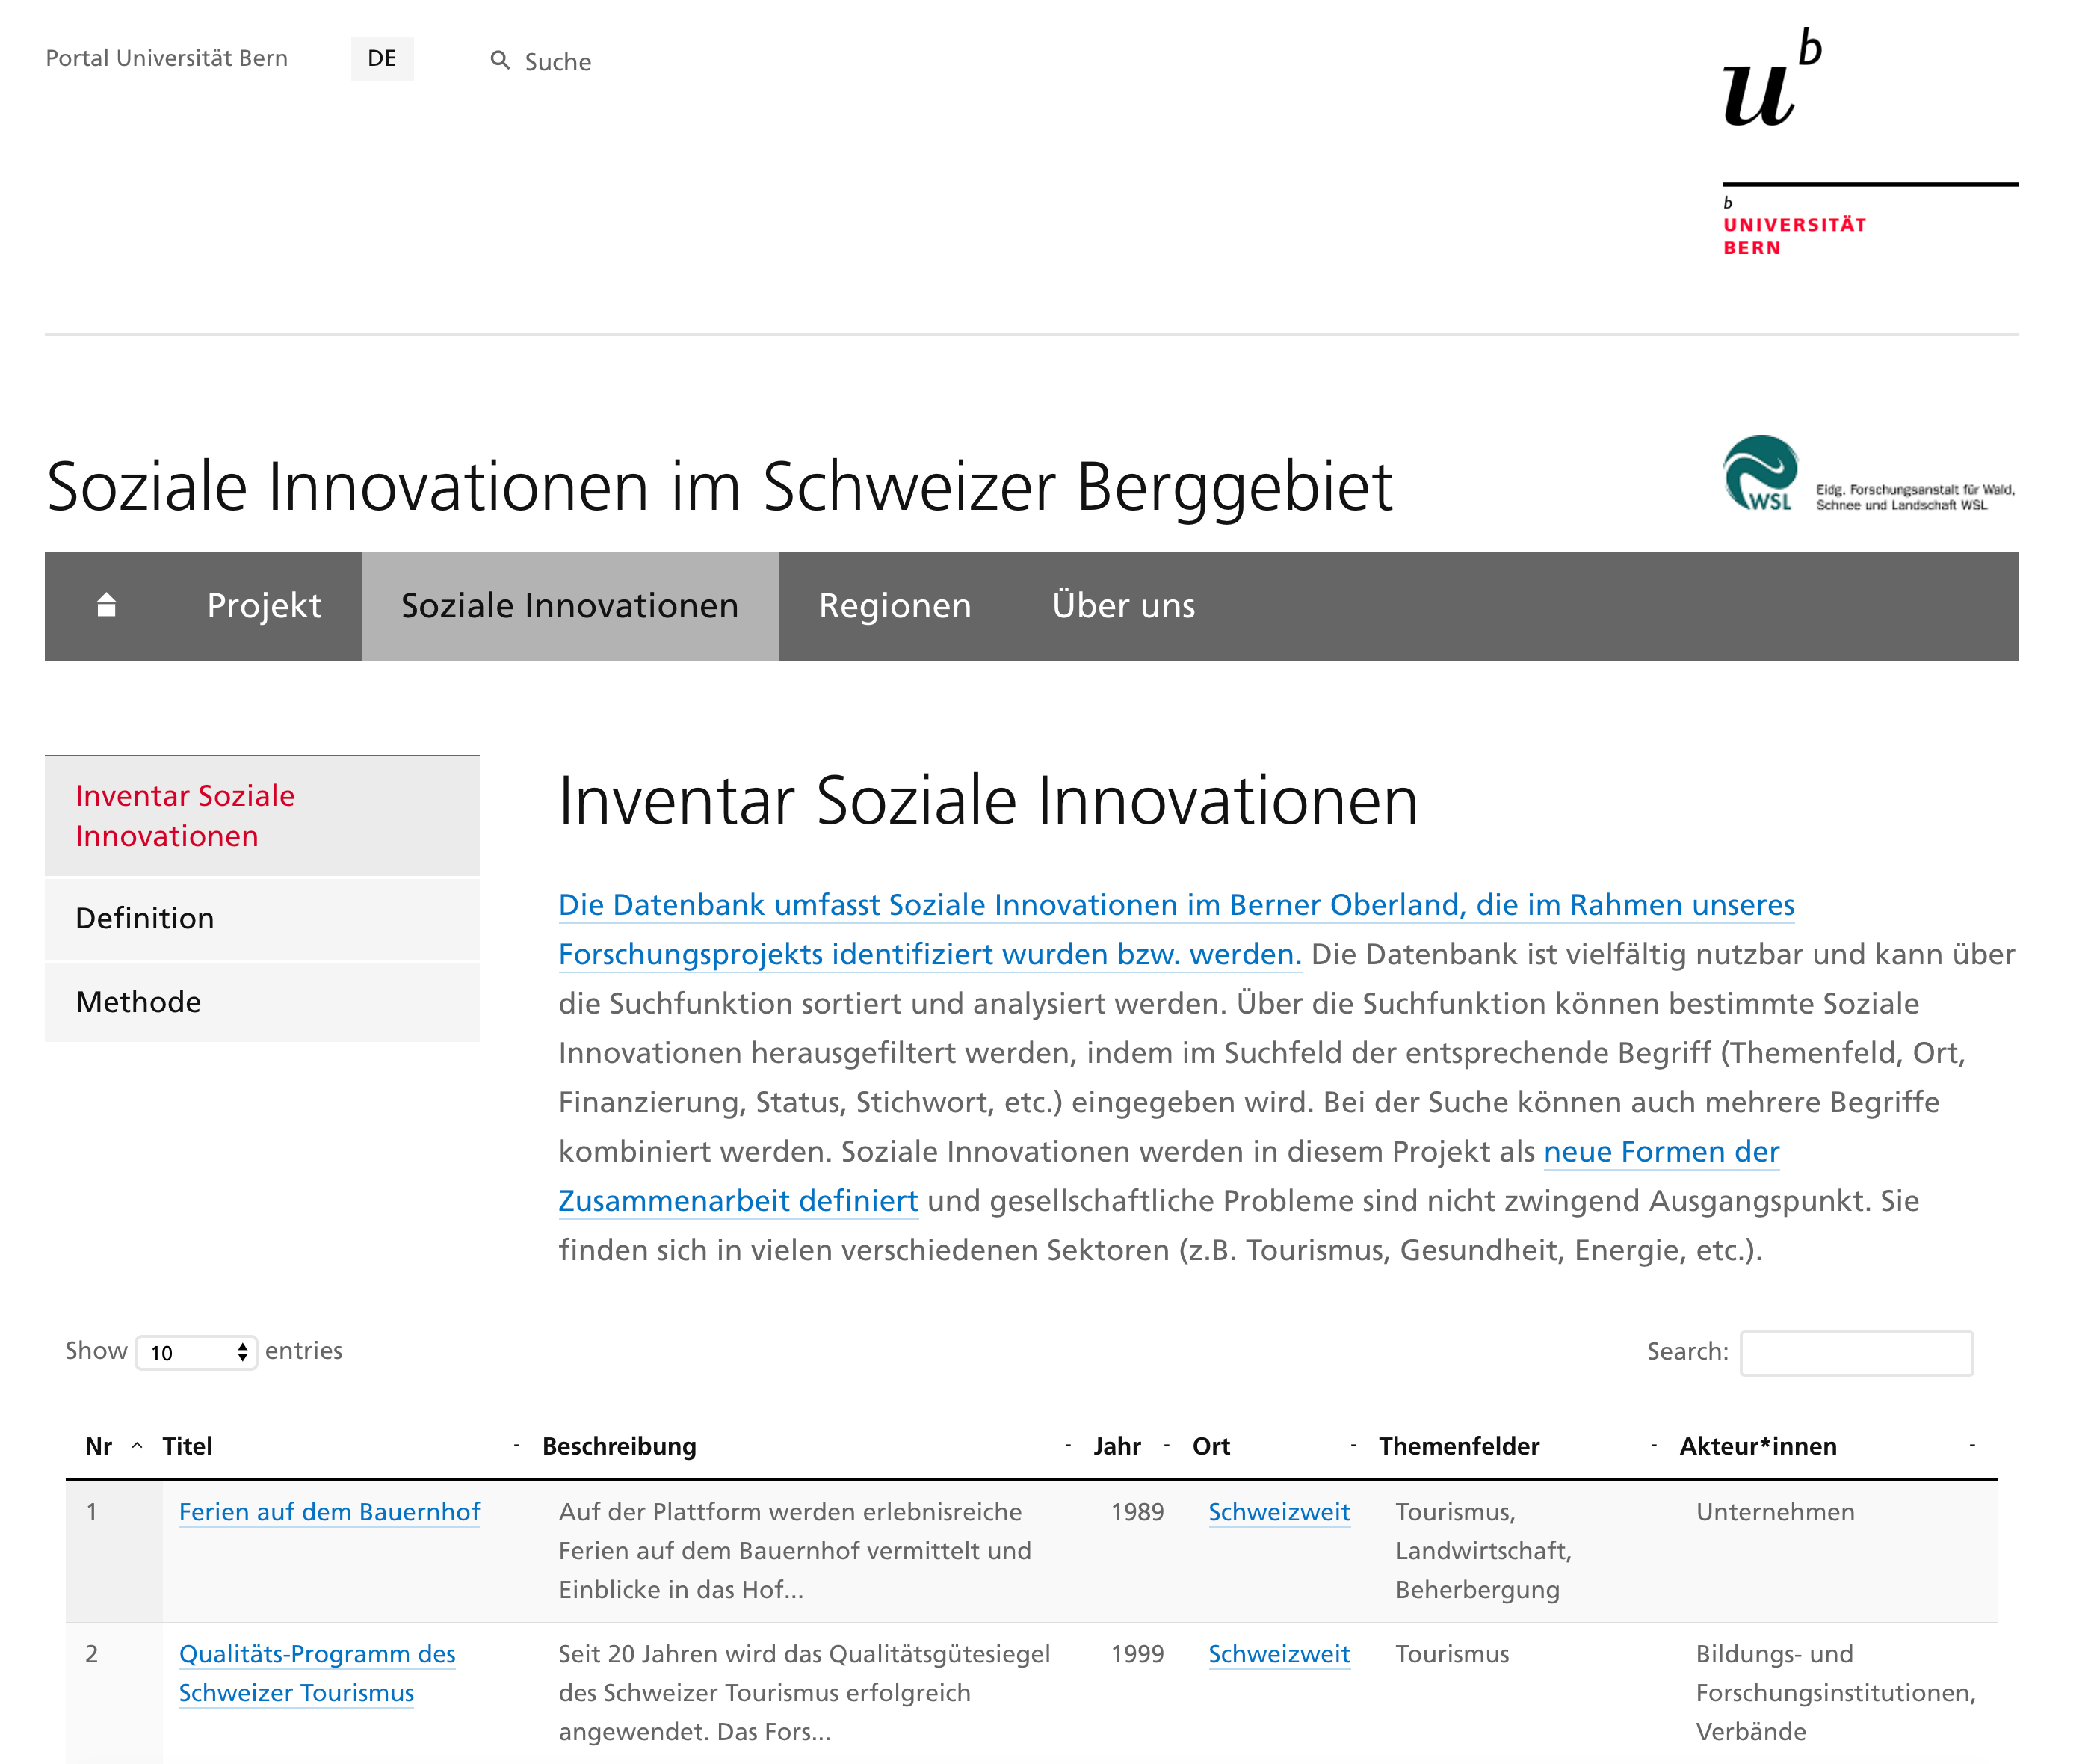 Auf der neuen Webplattform www.sozinno.unibe.ch lassen sich die Sozialen Innovationen im Berner Oberland beispielsweise nach Sektoren, Standorten und thematischen Ausprägungen durchsuchen. Bild: Screenshot unibe.ch